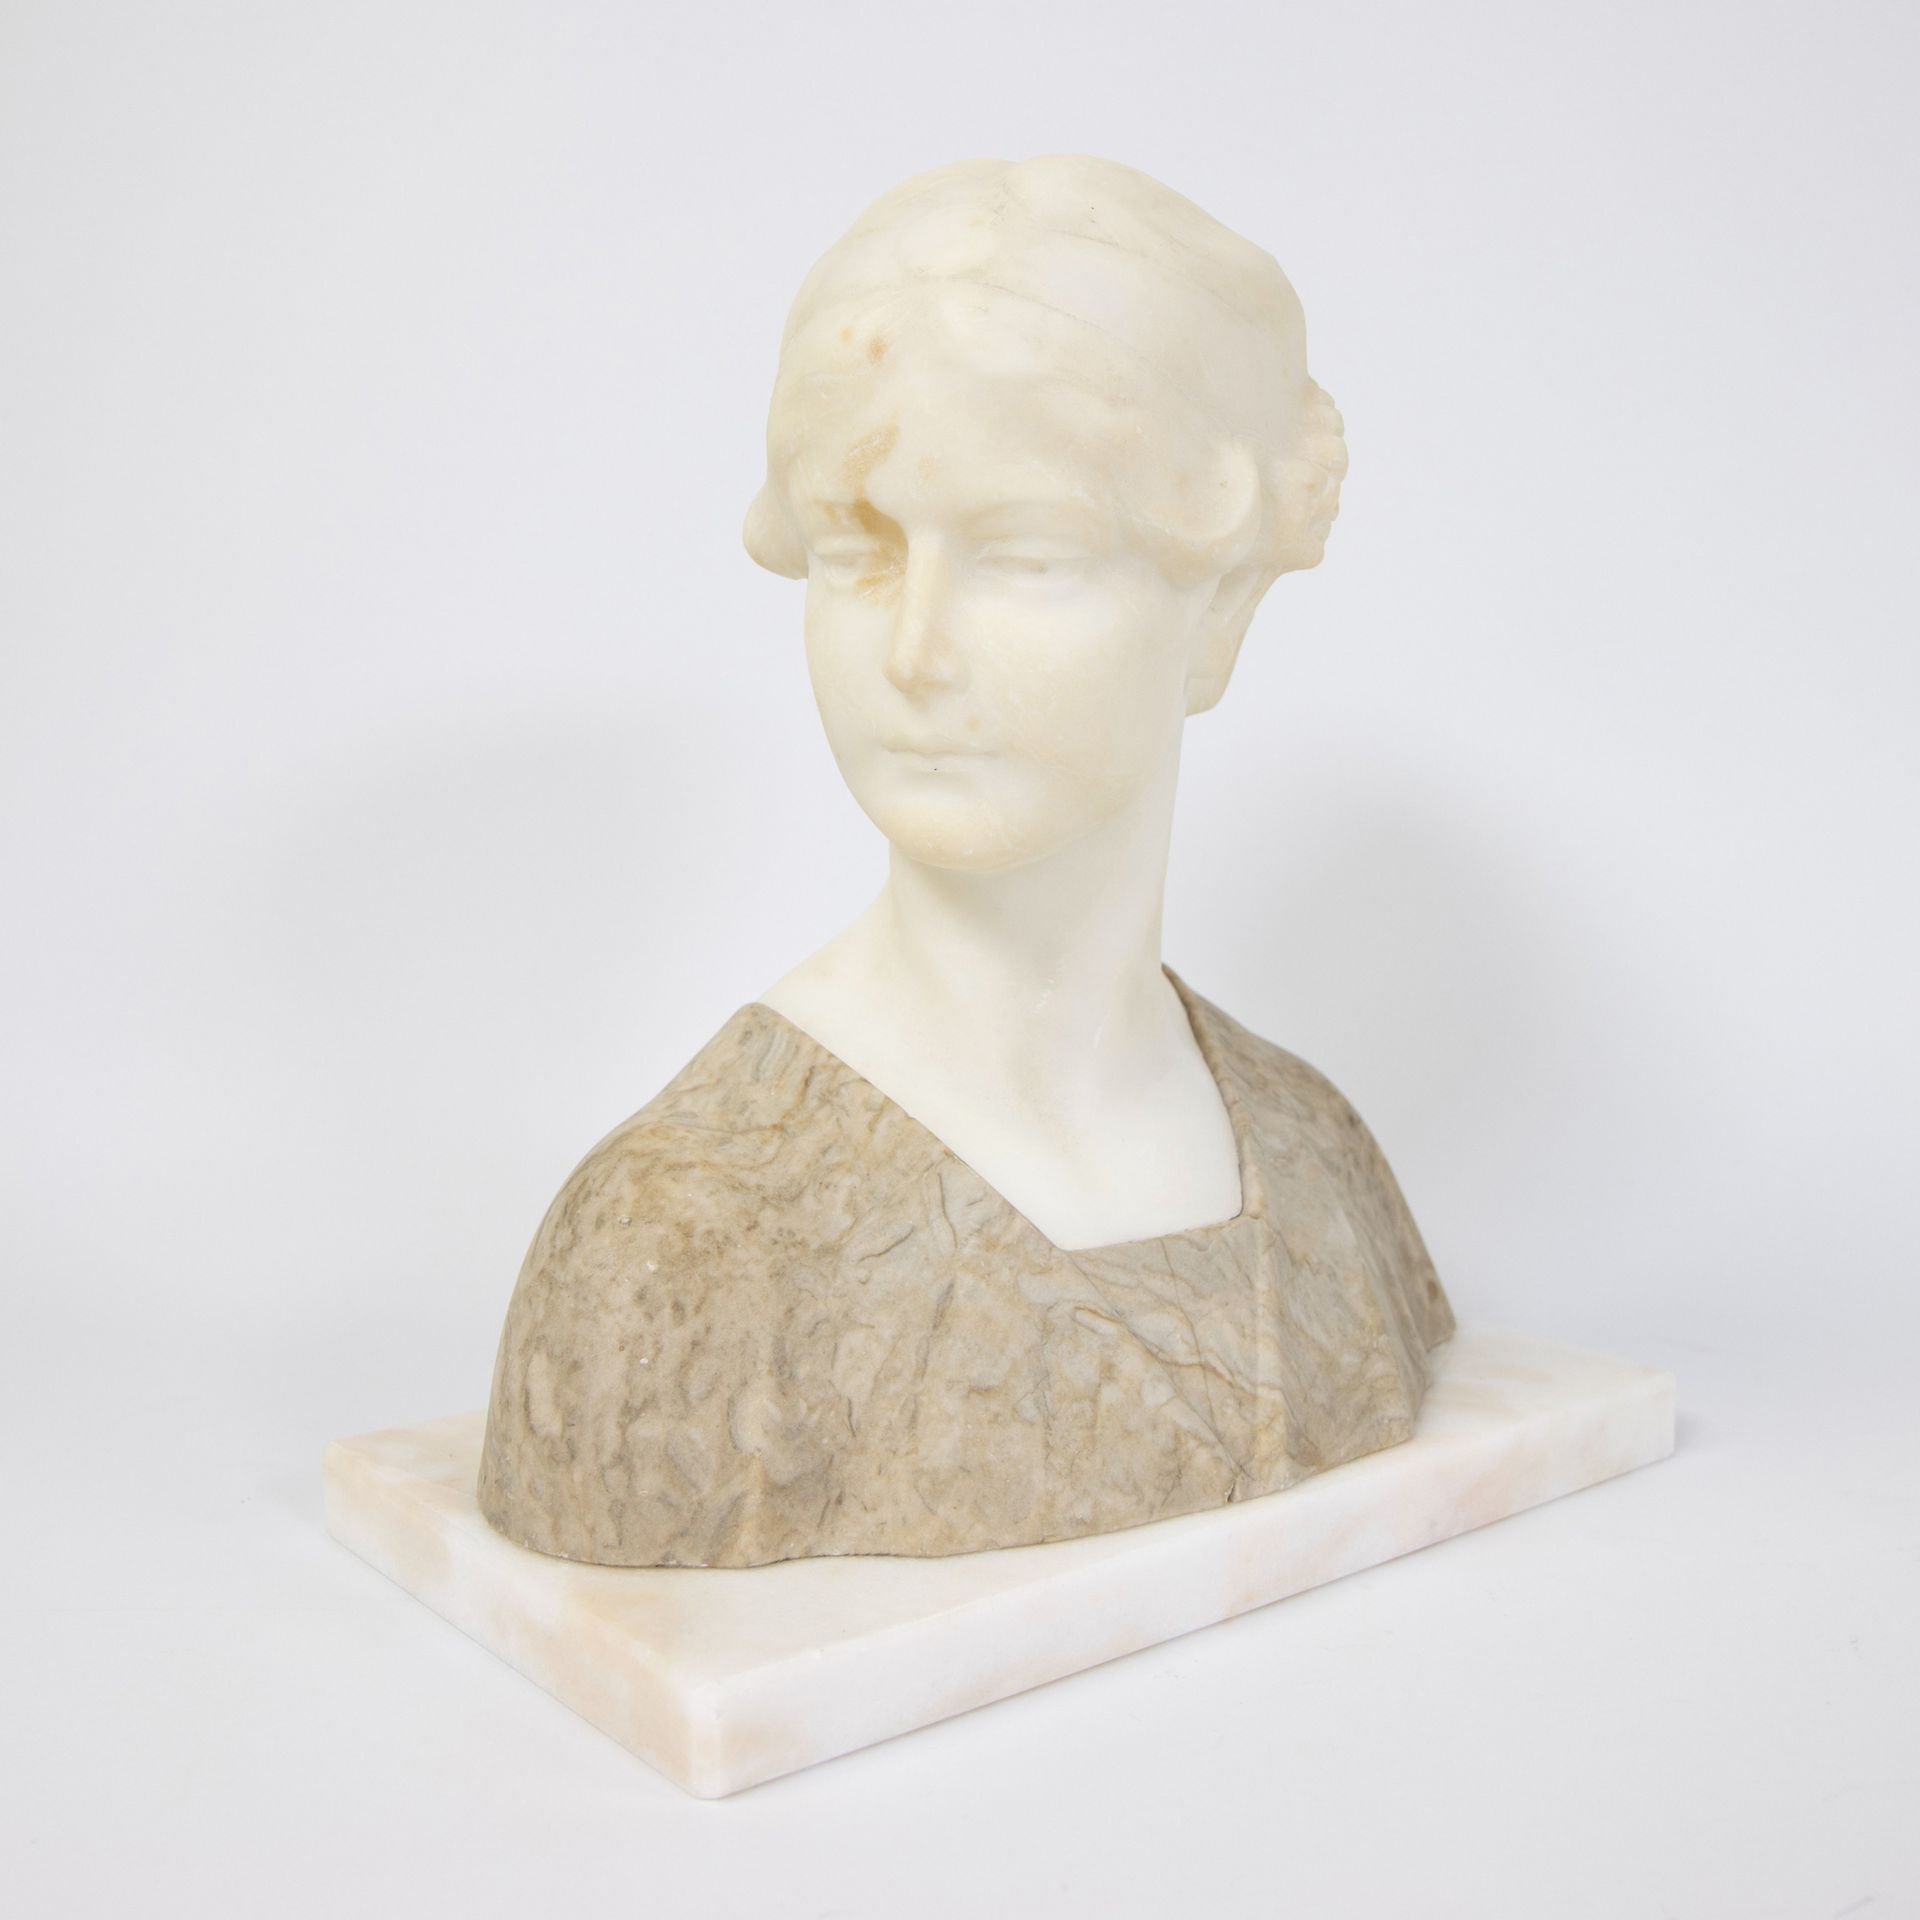 Null Busto de mujer en alabastro ca 1900
Damesbuste in albast ca 1900
H 27 cm